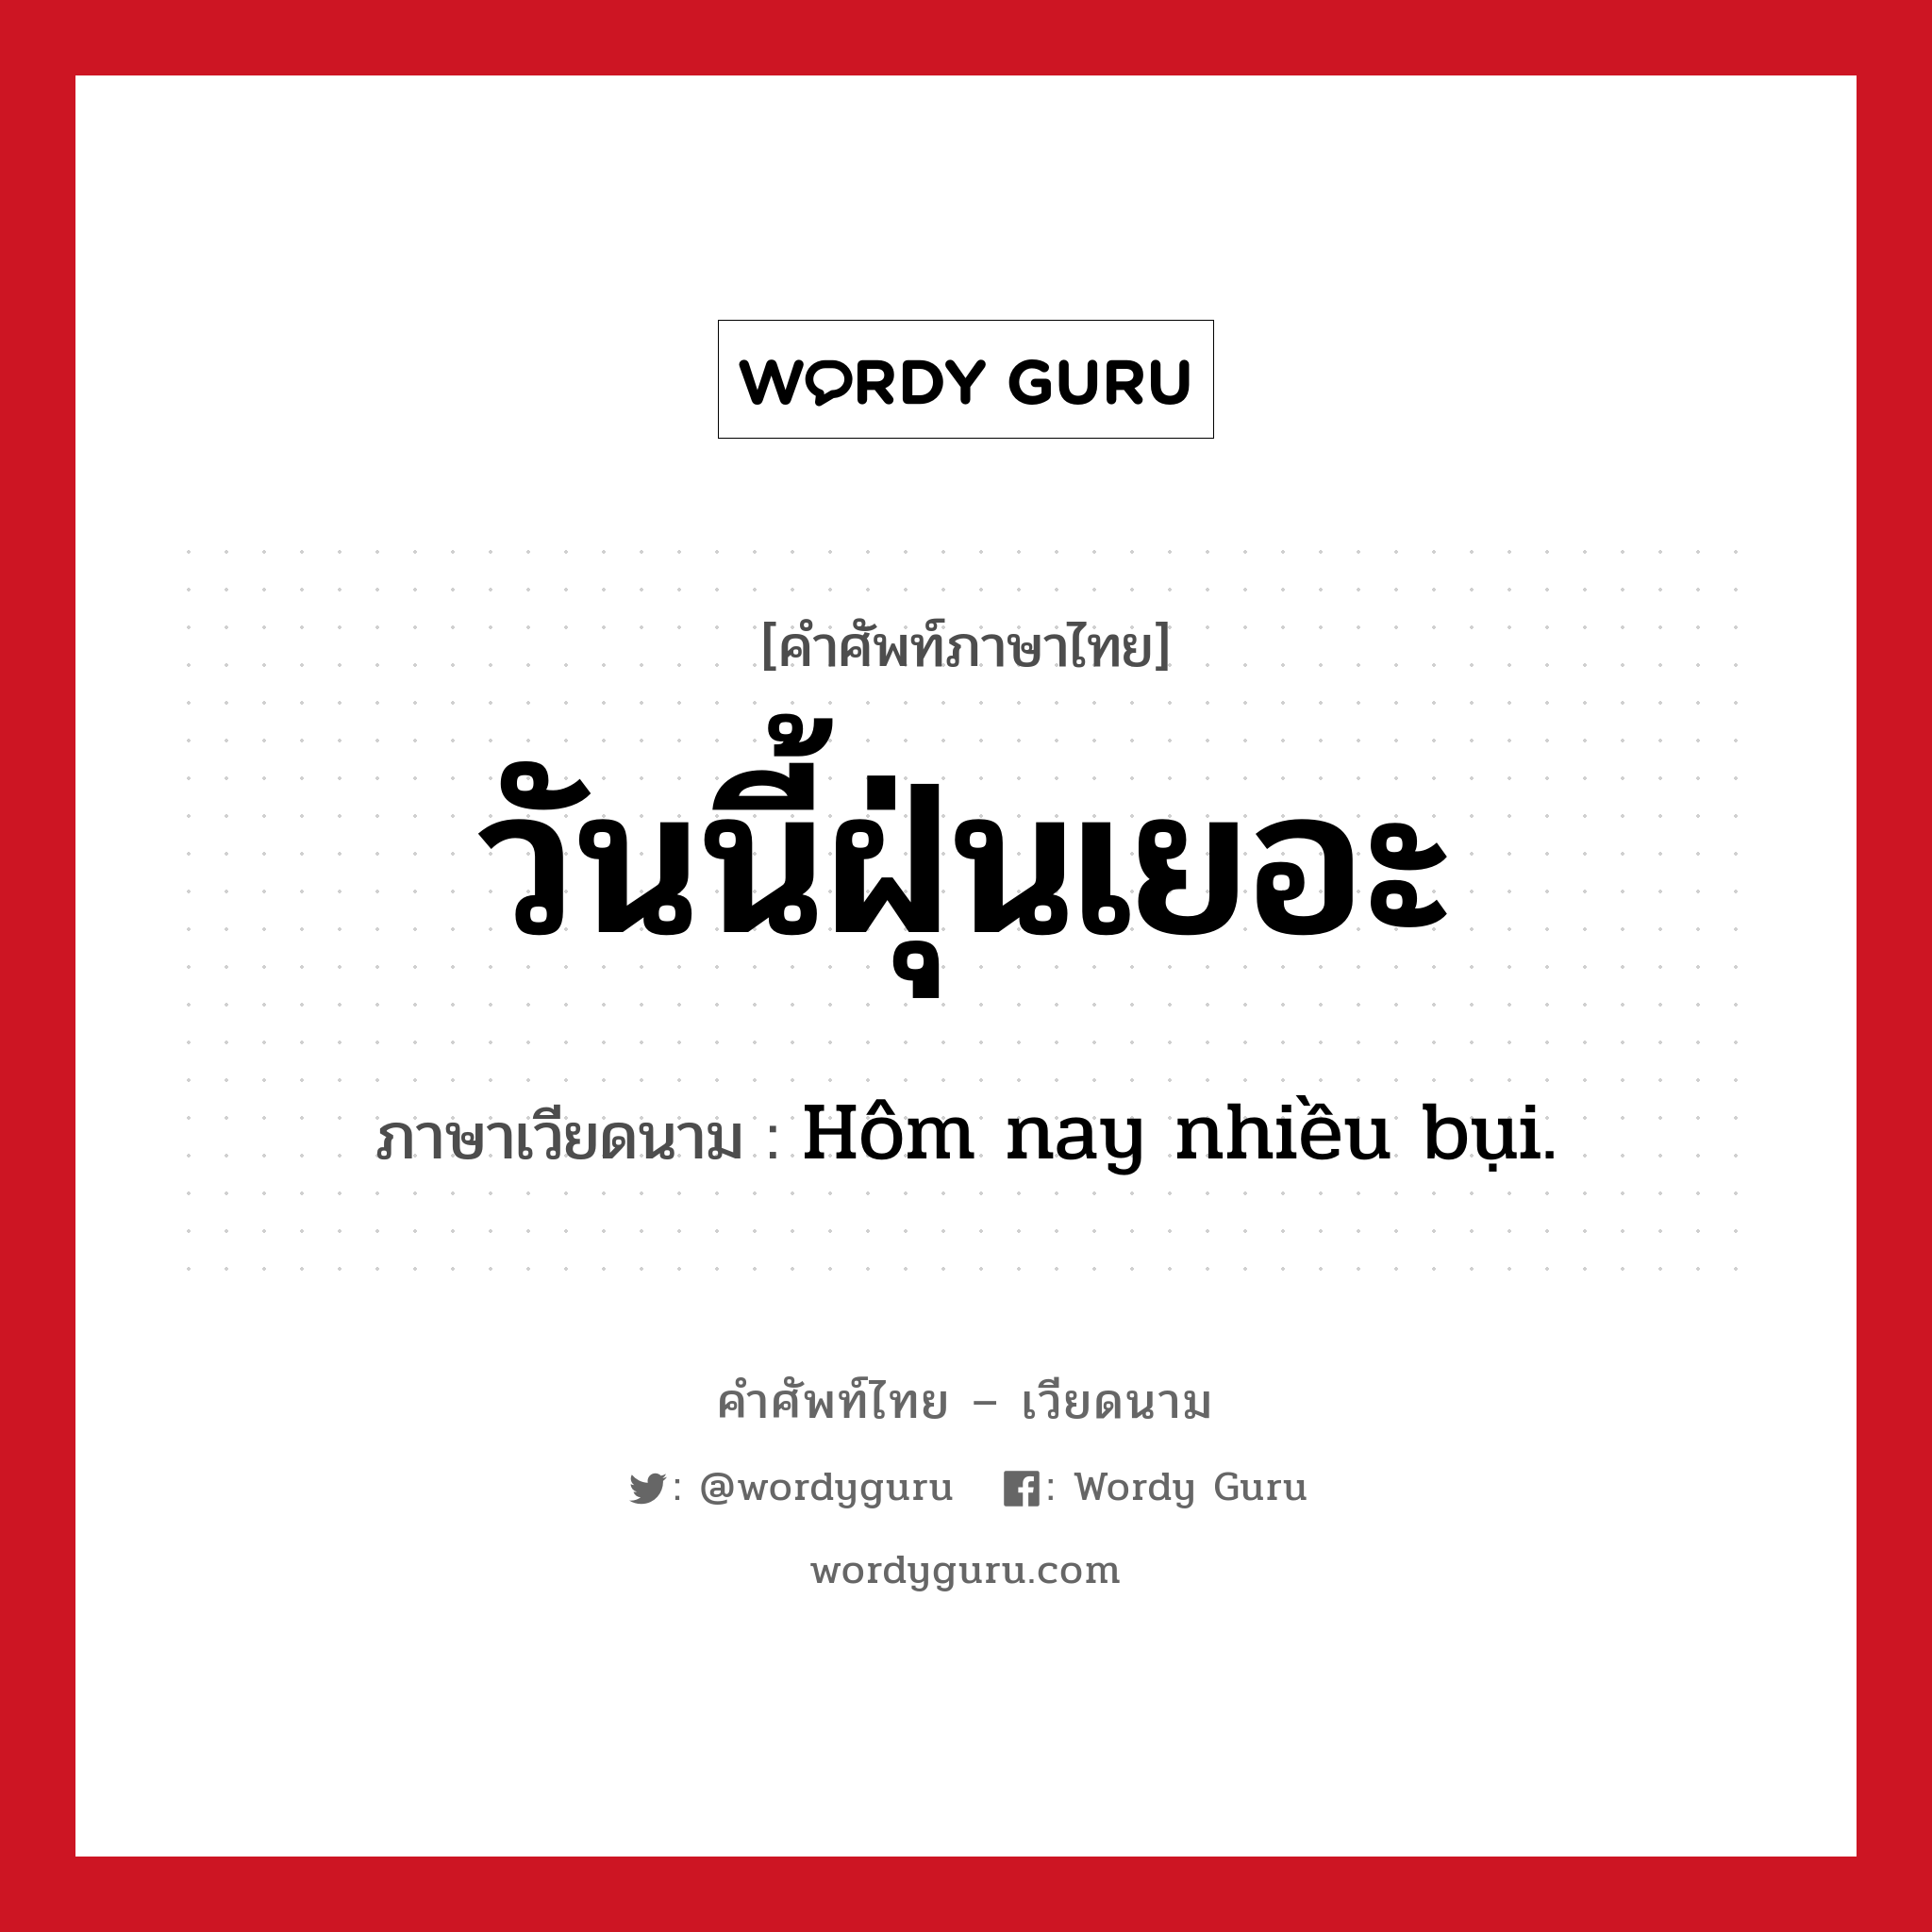 วันนี้ฝุ่นเยอะ ภาษาเวียดนามคืออะไร, คำศัพท์ภาษาไทย - เวียดนาม วันนี้ฝุ่นเยอะ ภาษาเวียดนาม Hôm nay nhiều bụi. หมวด สภาพอากาศ หมวด สภาพอากาศ